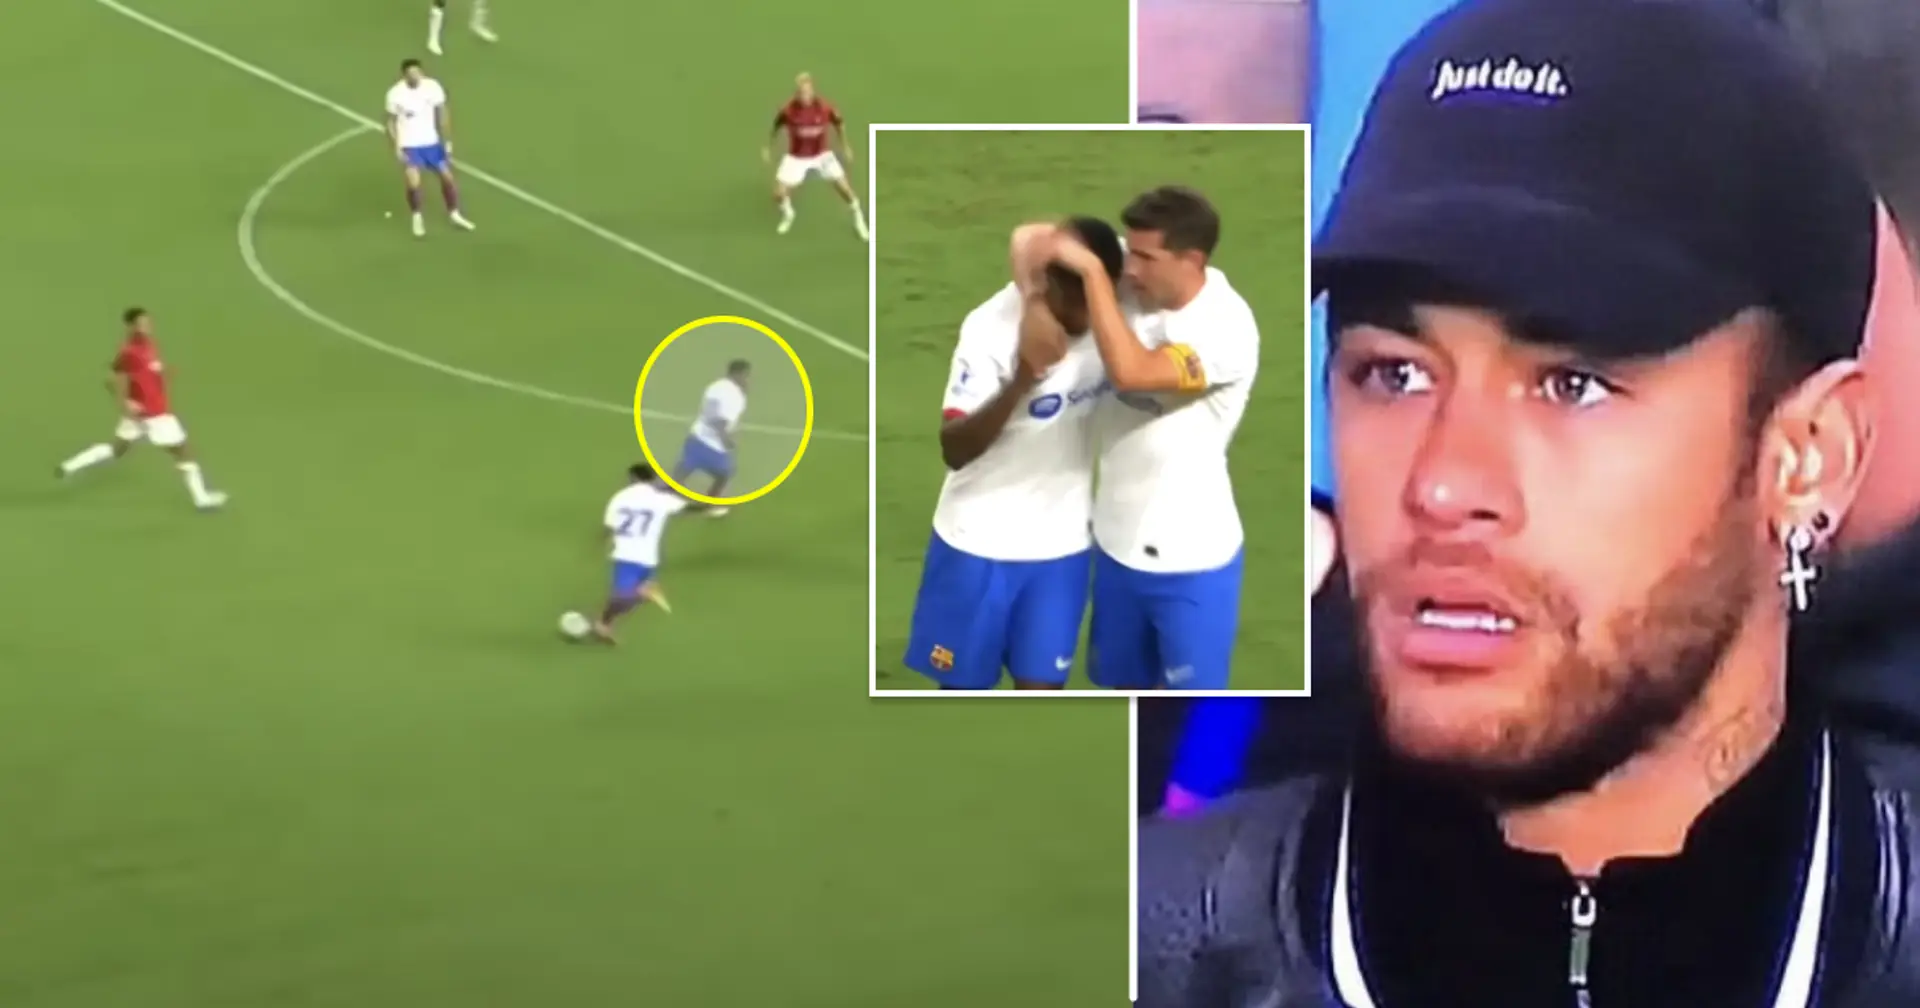 La llegada de Neymar podría provocar la salida 'dolorosa' de un jugador clave (fiabilidad: 4 estrellas)